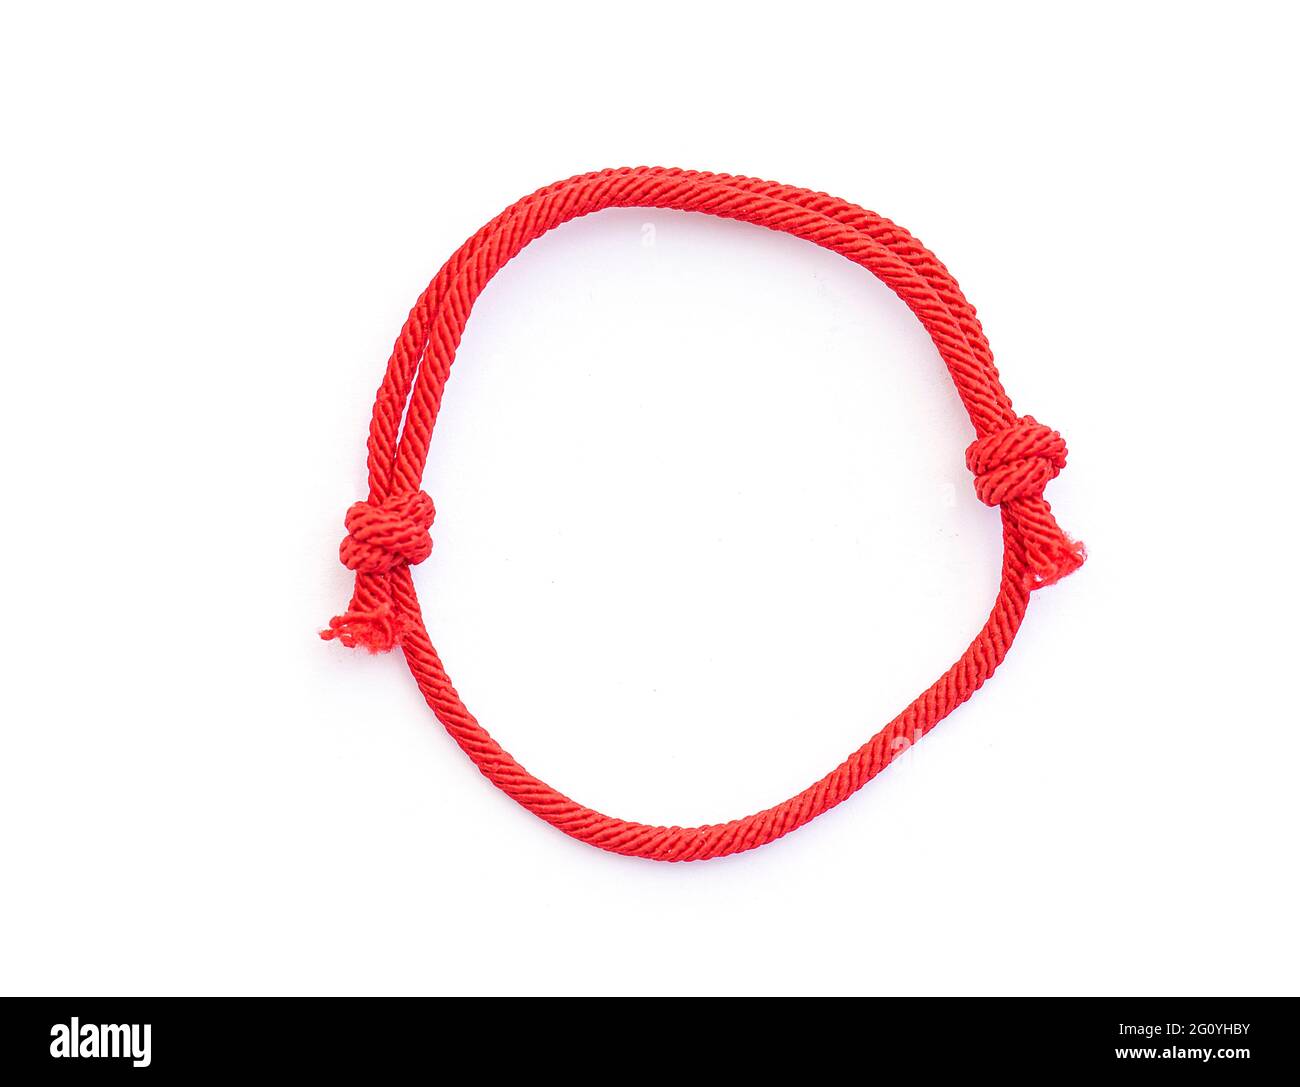 Roter Faden, Schnur als Amulett für Handgelenk isoliert auf weiß. Rotes  Armband mit Knoten. Draufsicht Stockfotografie - Alamy